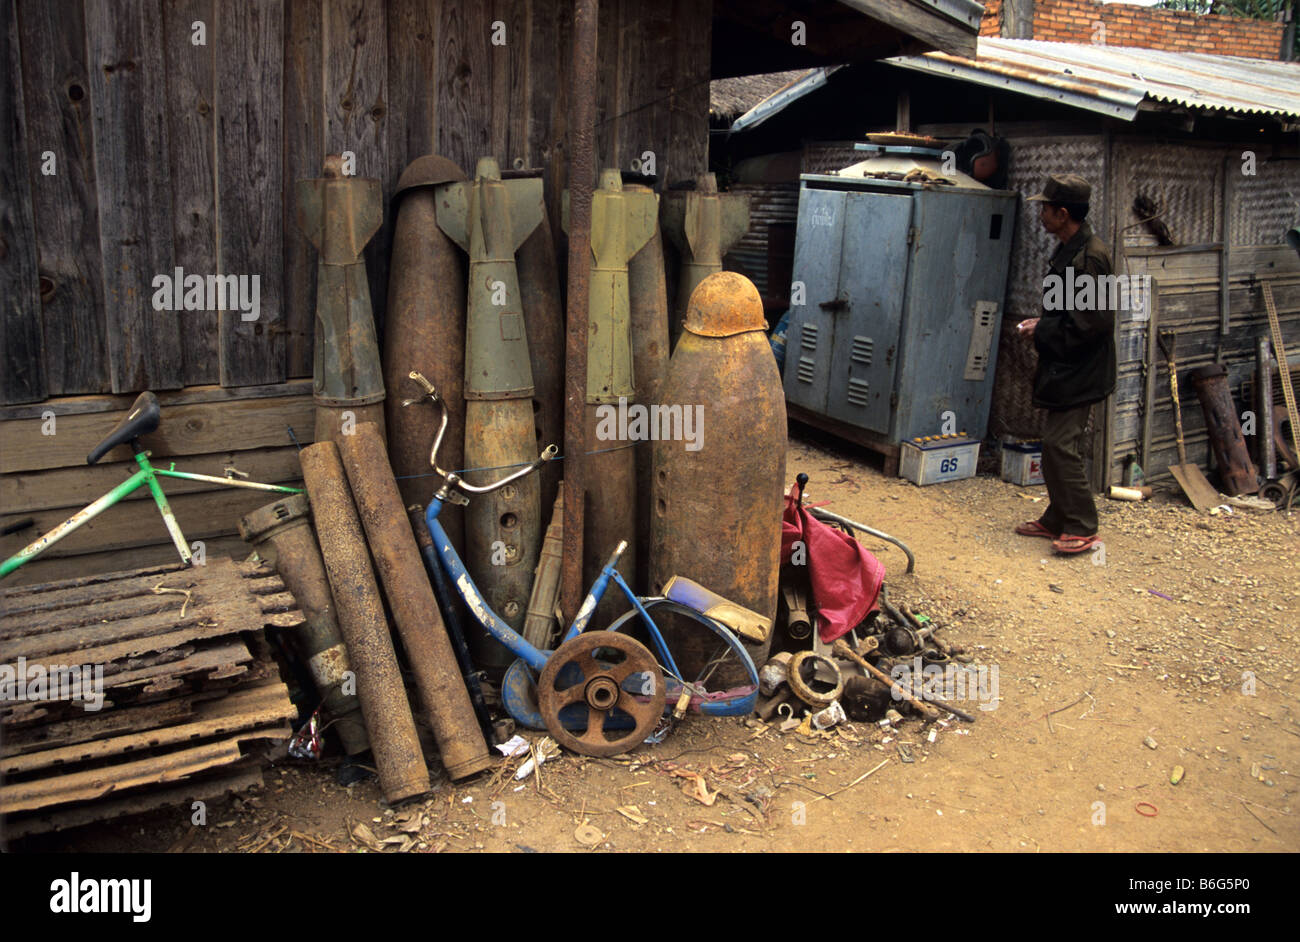 Scrap metal dealer and yard with US Vietnam war-era war scrap, cluster bomb casings, missiles and mortars, Phonsavan, Laos Stock Photo